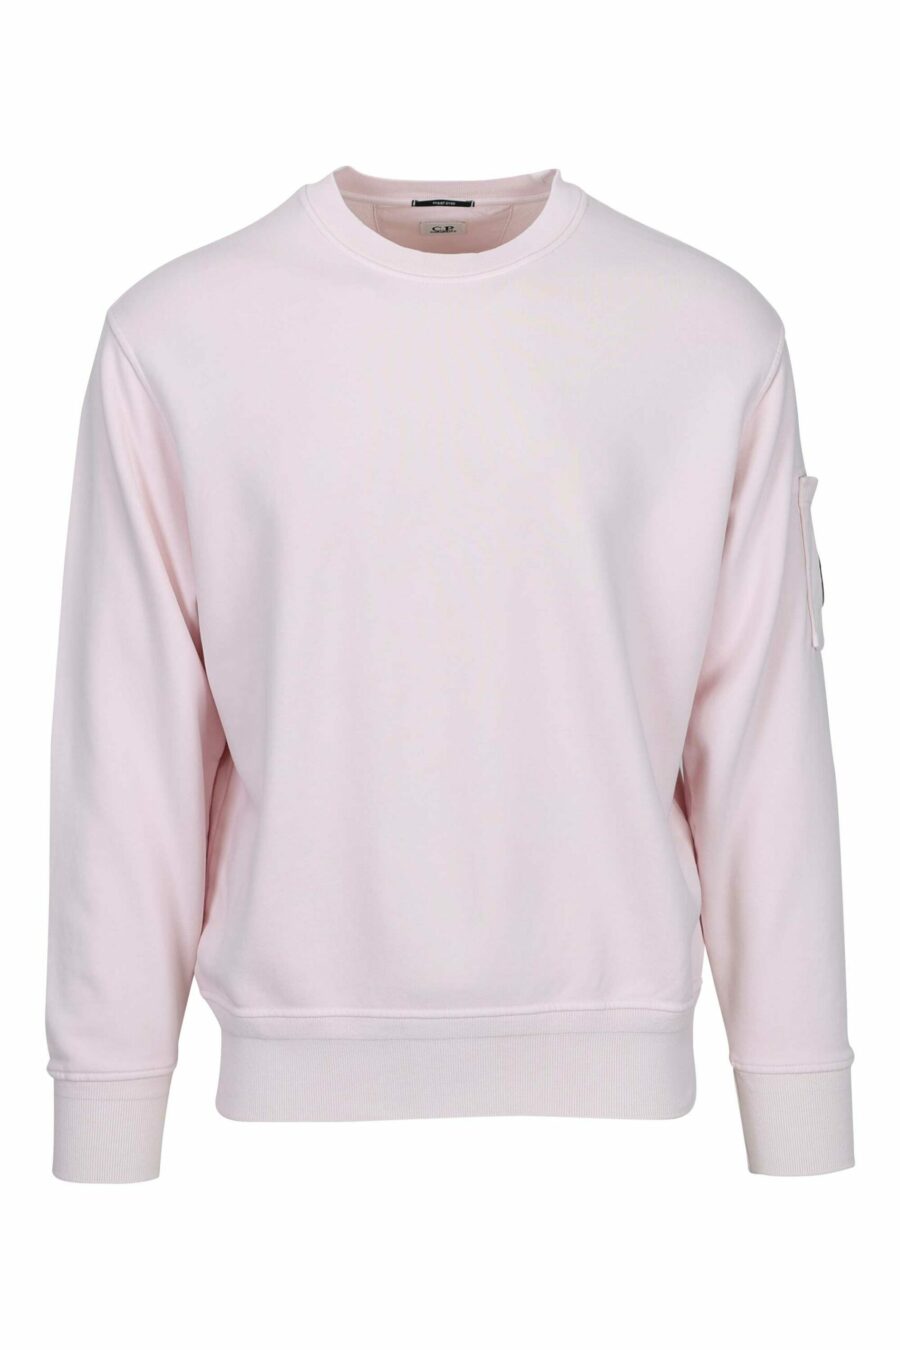 Sweatshirt rose avec poche et lentille mini-logo - 7620943751697 en échelle